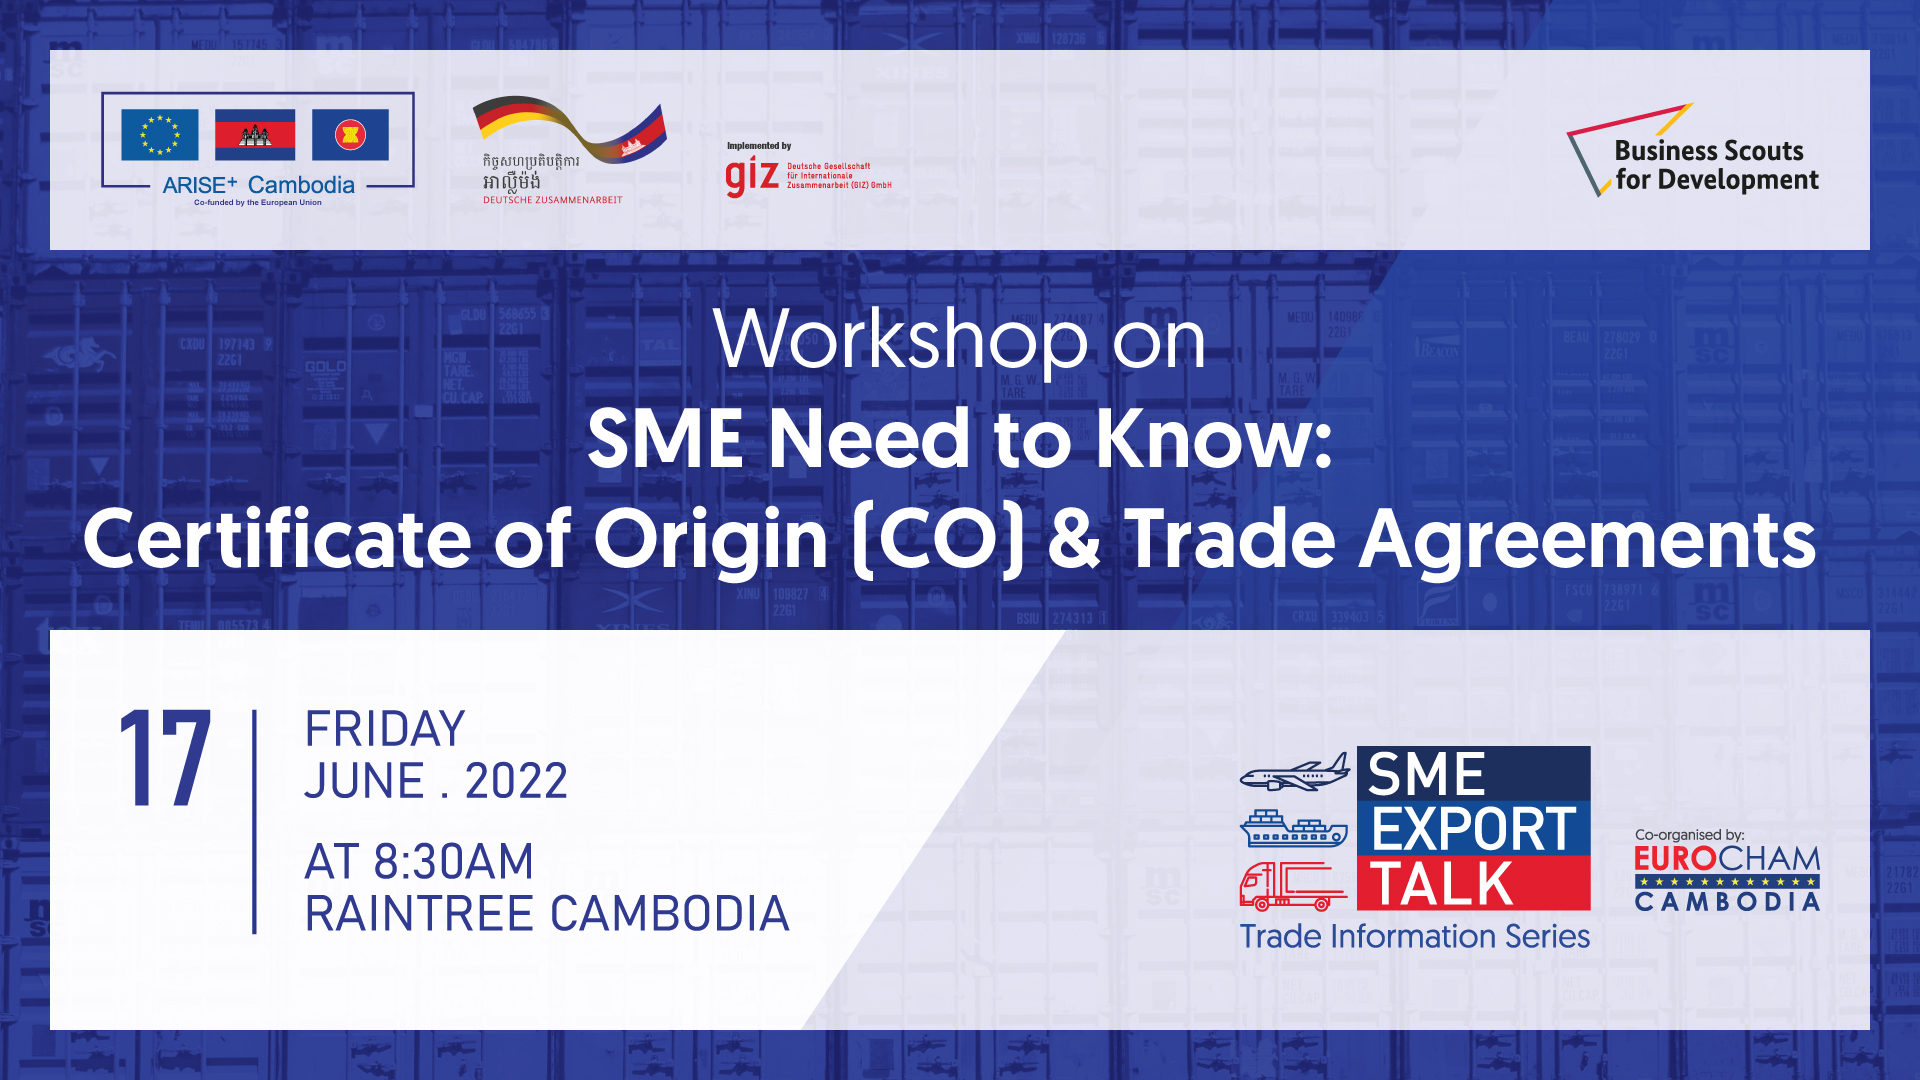 EuroCham and ARISE Plus Cambodia event  “SME Export Talk” 17th June 2022